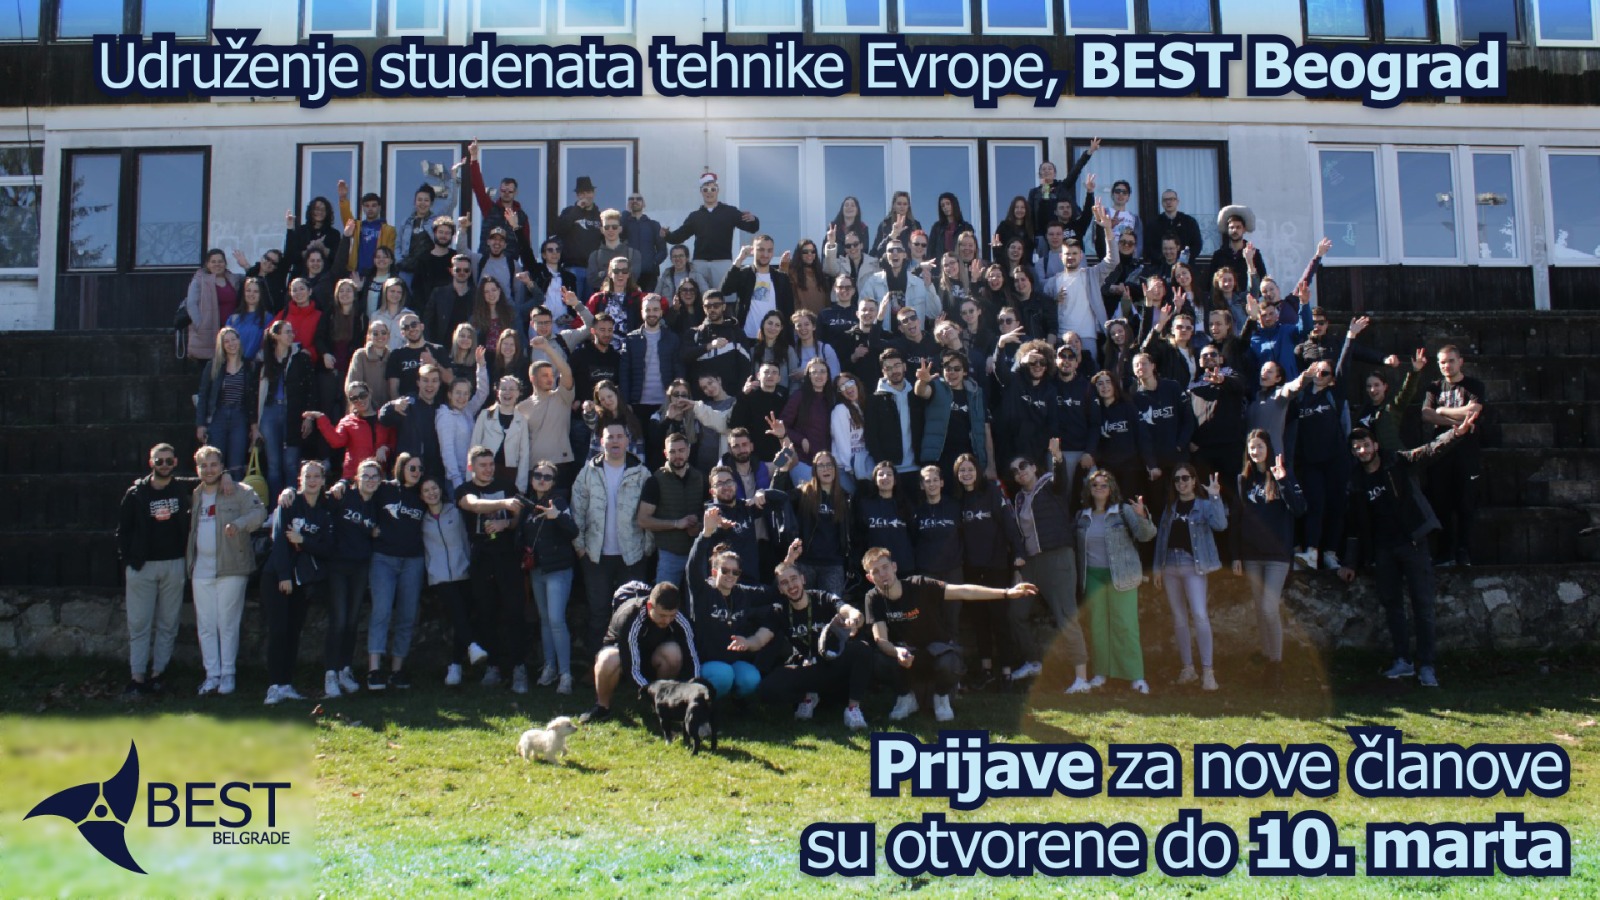 Udruženje studenata tehnike Evrope – BEST Beograd, otvara poziv za nove članove!